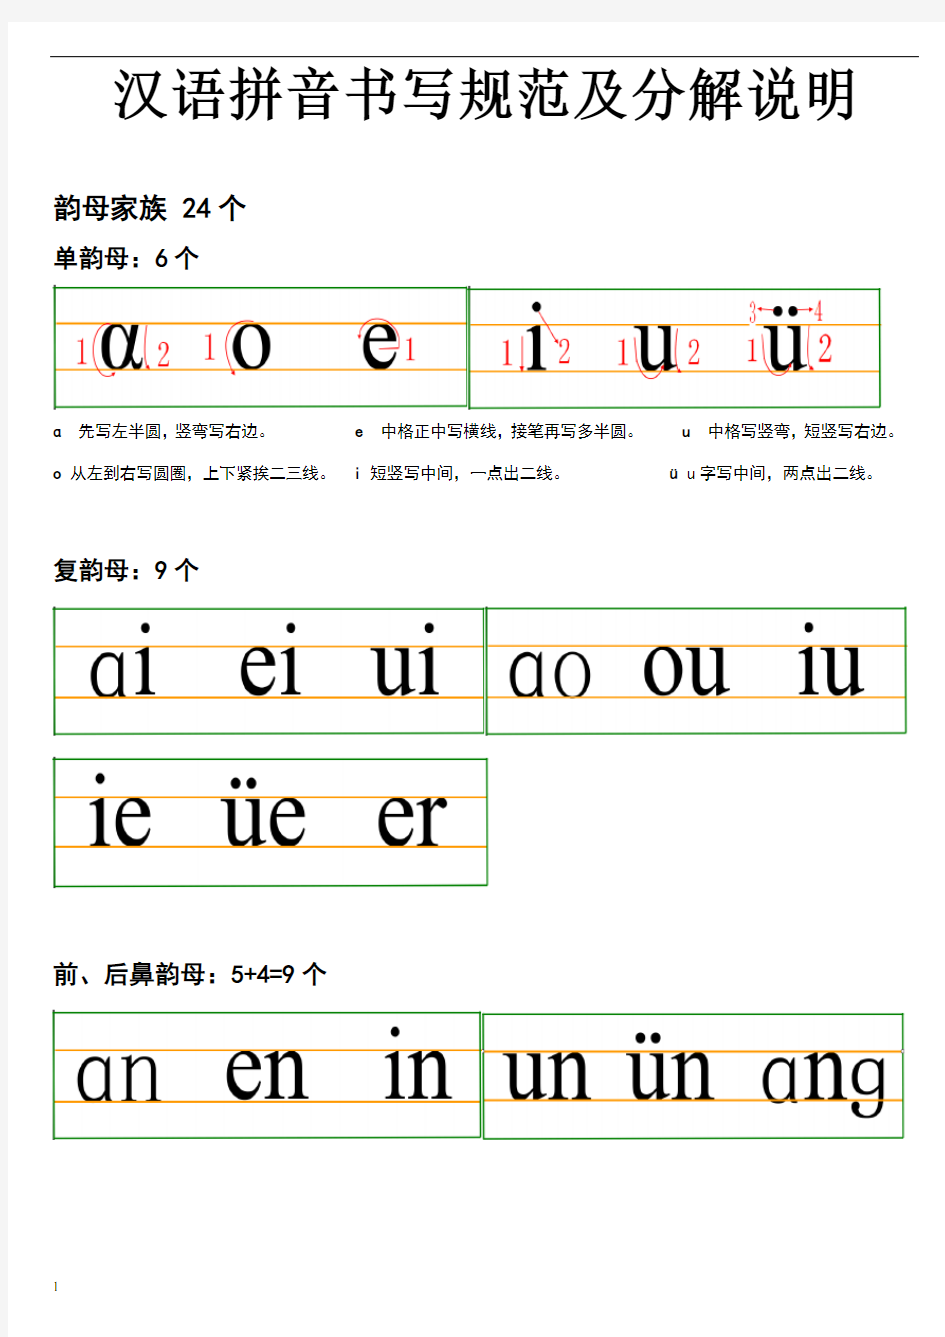 一年级汉语拼音书写规范及分解说明